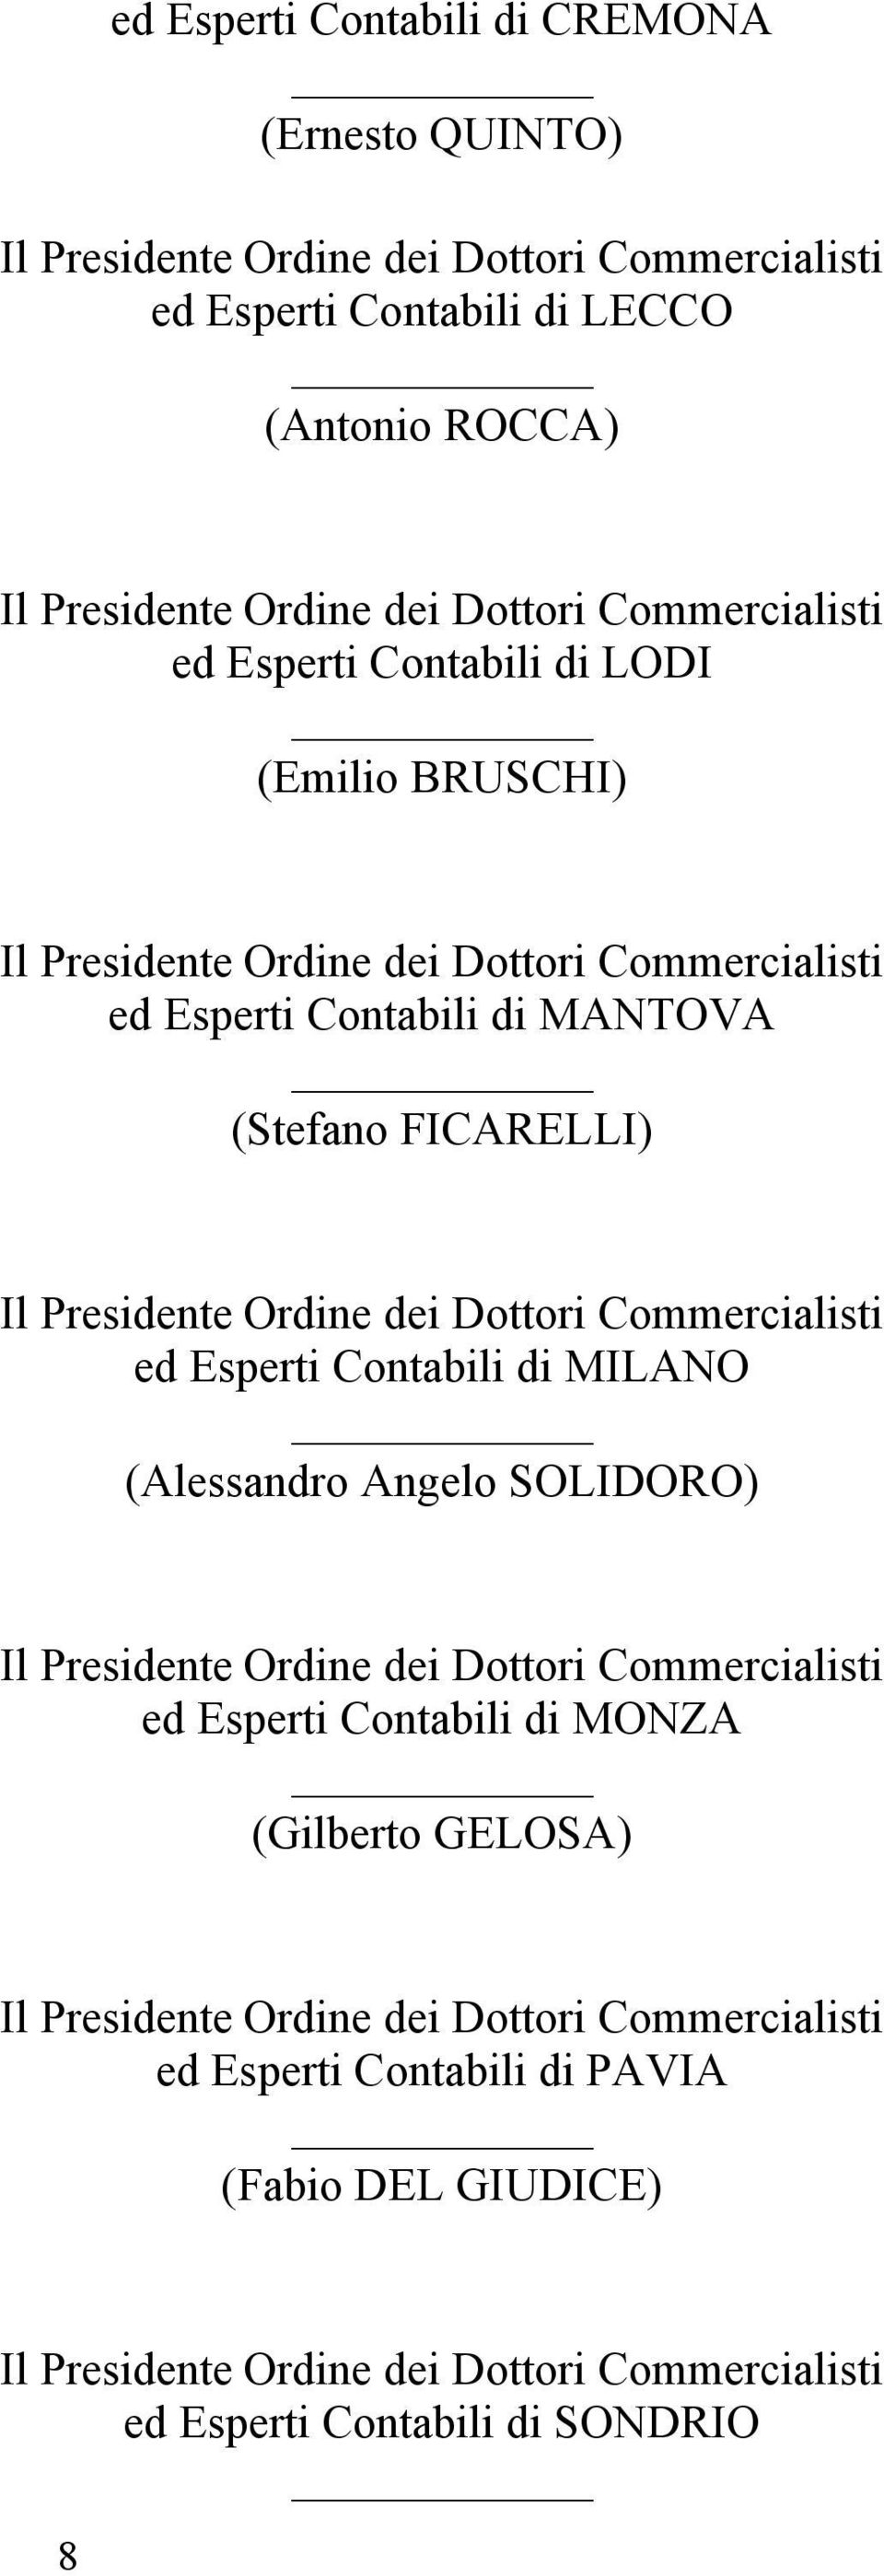 FICARELLI) ed Esperti Contabili di MILANO (Alessandro Angelo SOLIDORO) ed Esperti Contabili di